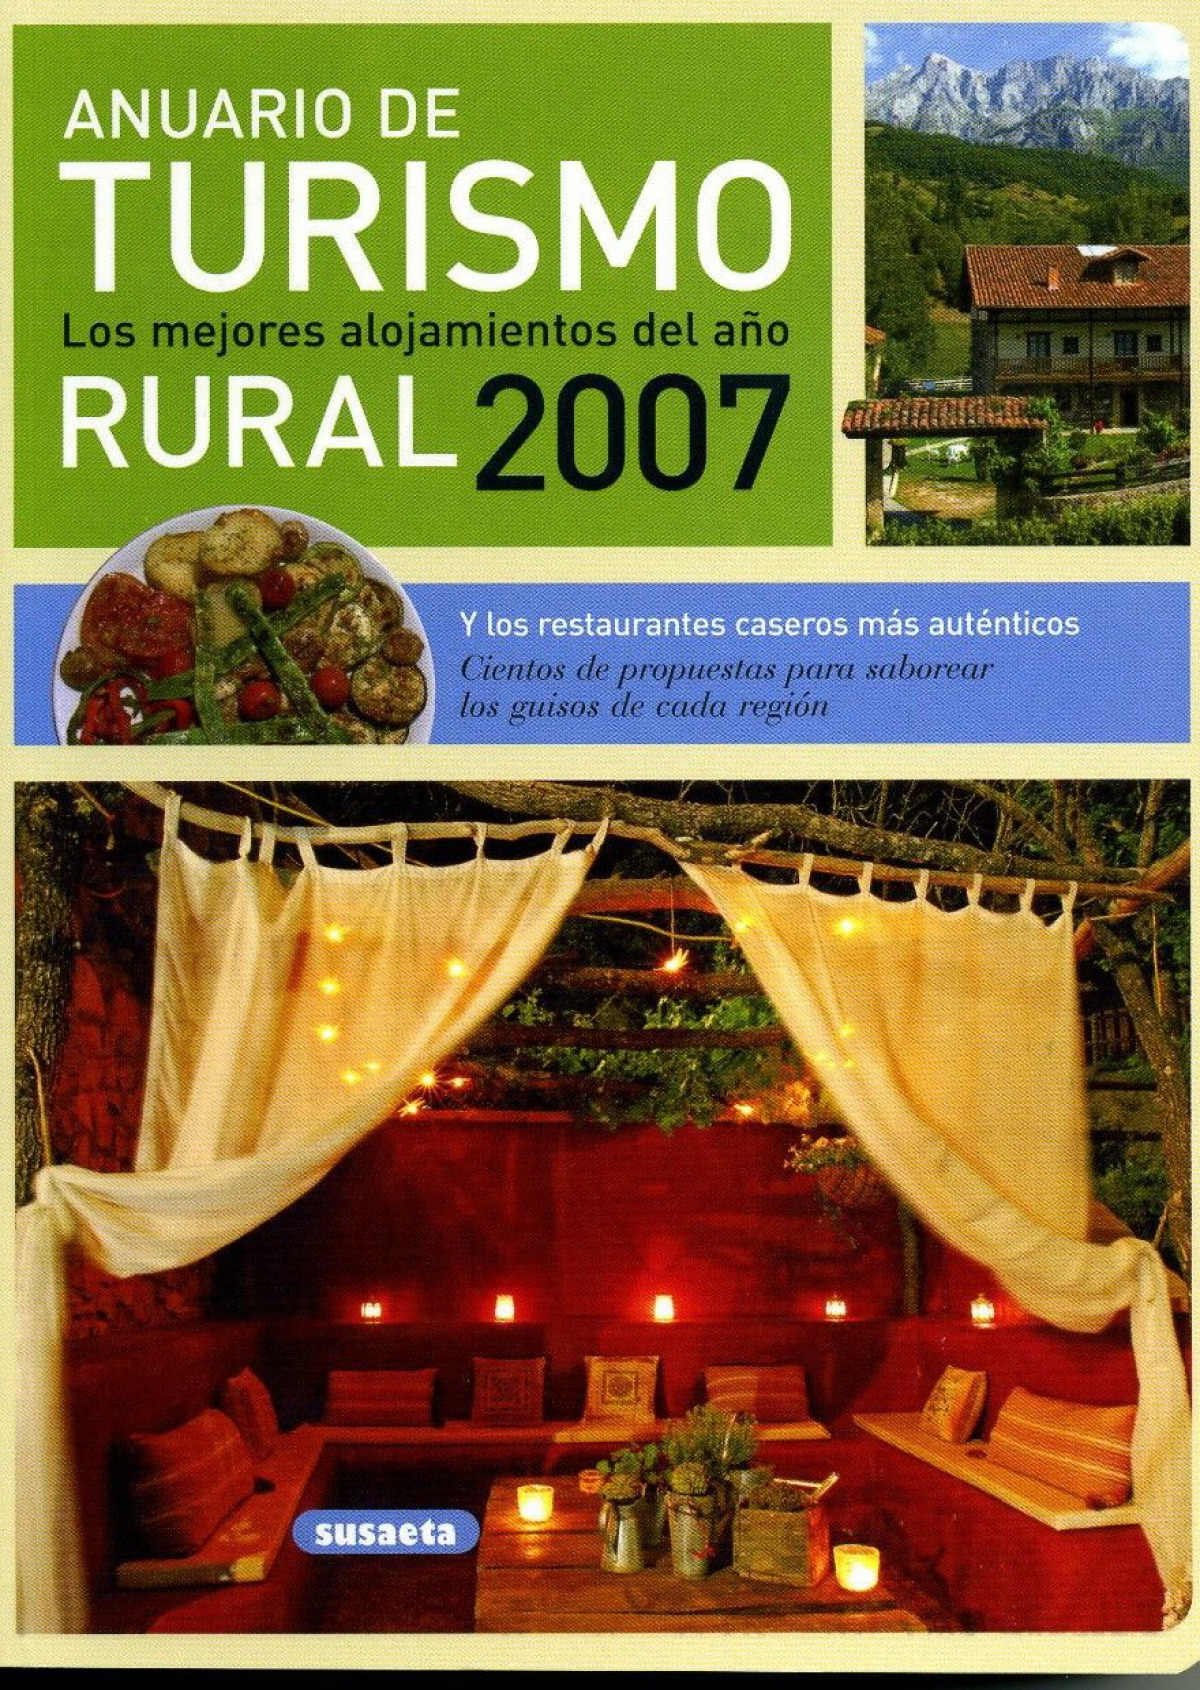 Anuario de turismo rural 2007 - Pilar Alonso y Alberto Gil